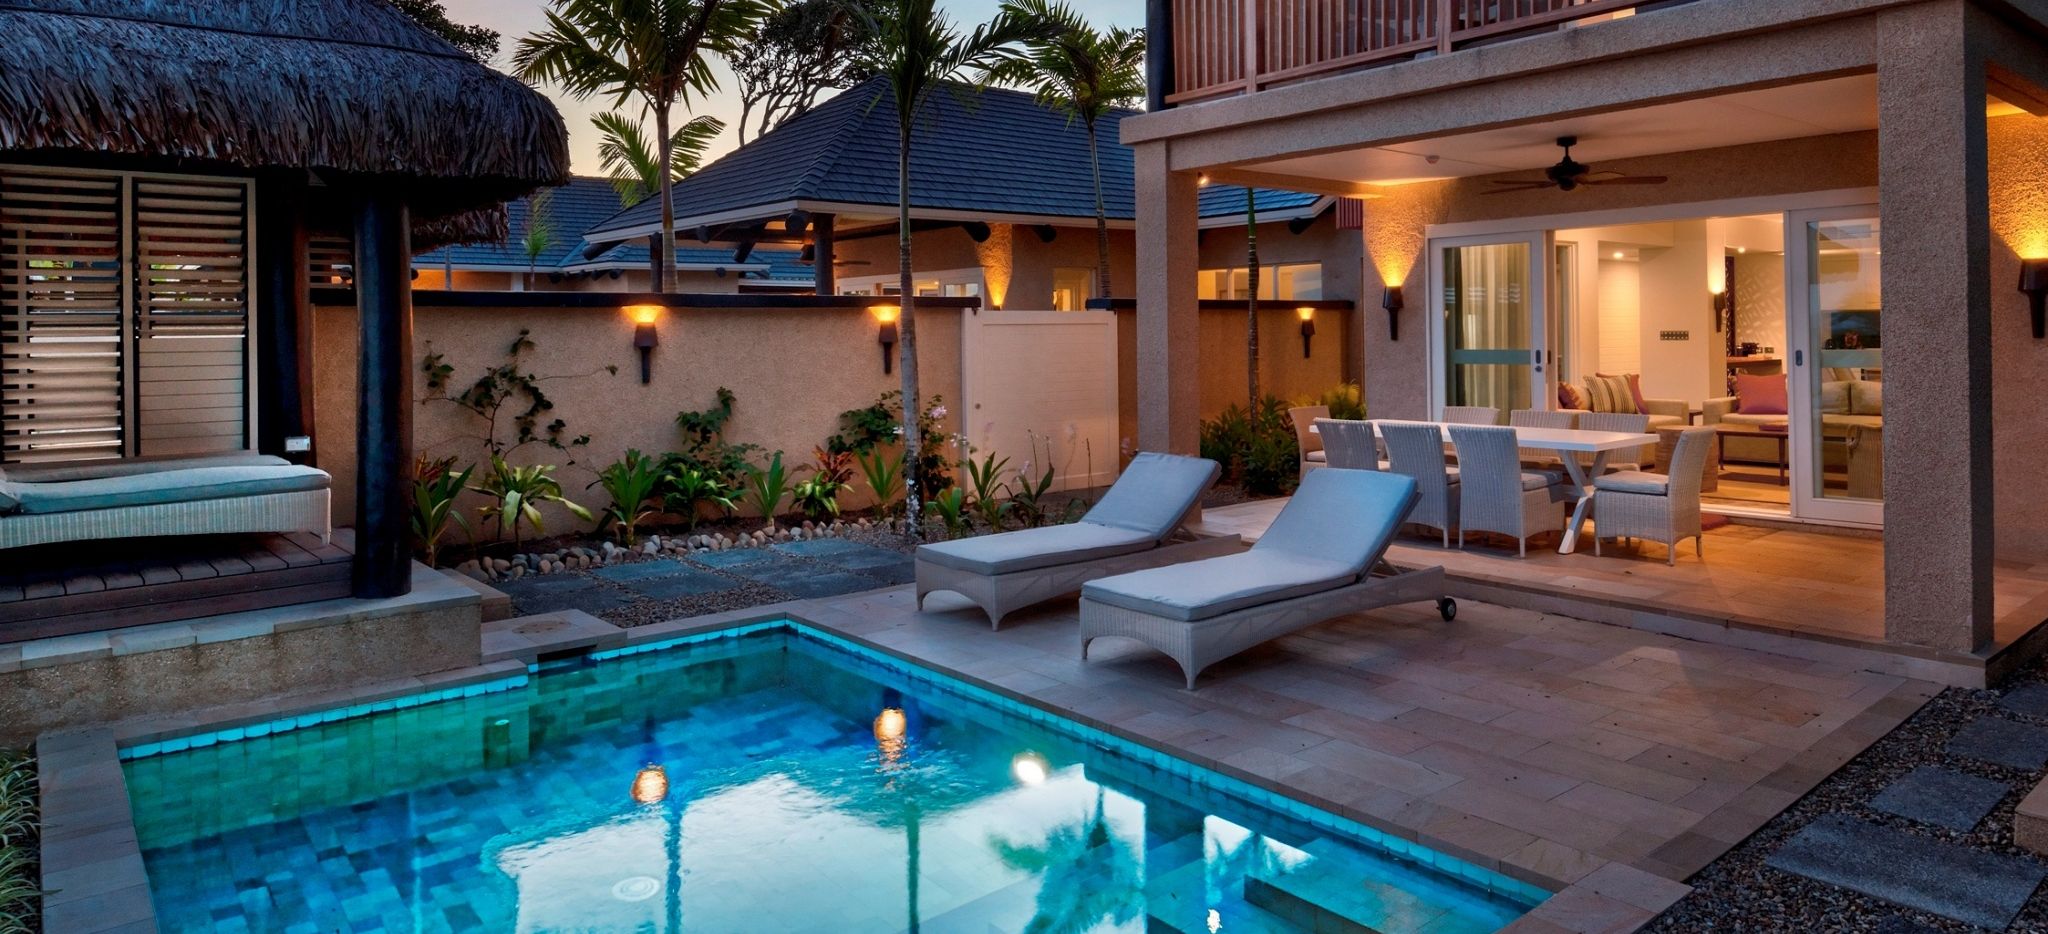 Außenbereich einer Beachfront Villa des Nanuku Resorts mit Essbereich, Liegen und Pool